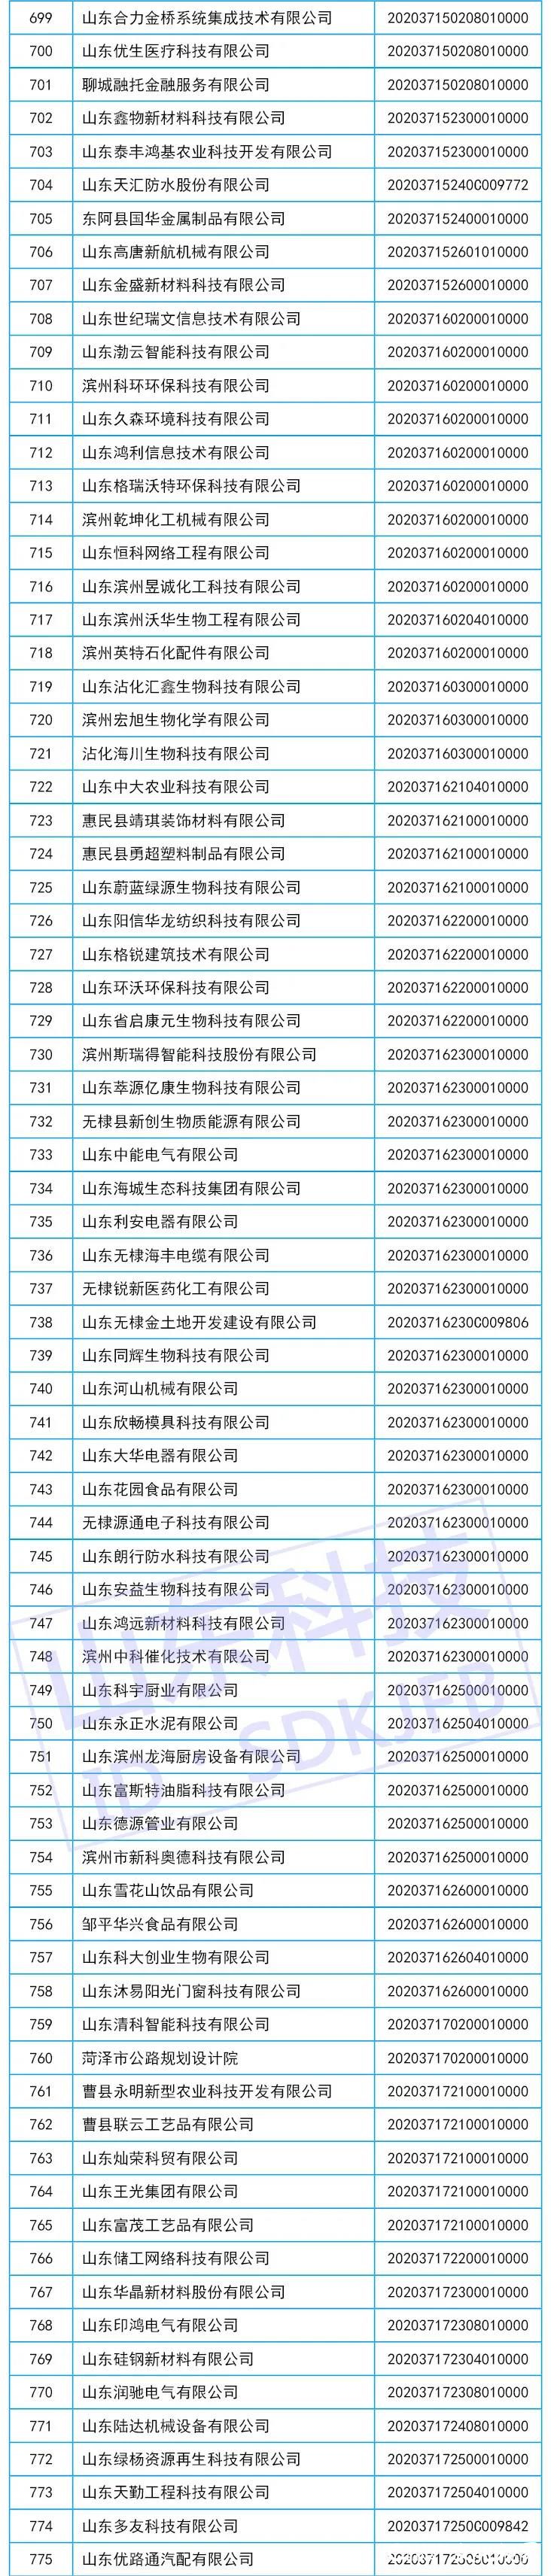 山东省2020年第六批775家入库科技型中小企业名单公布，澎湃云软件科技榜上有名